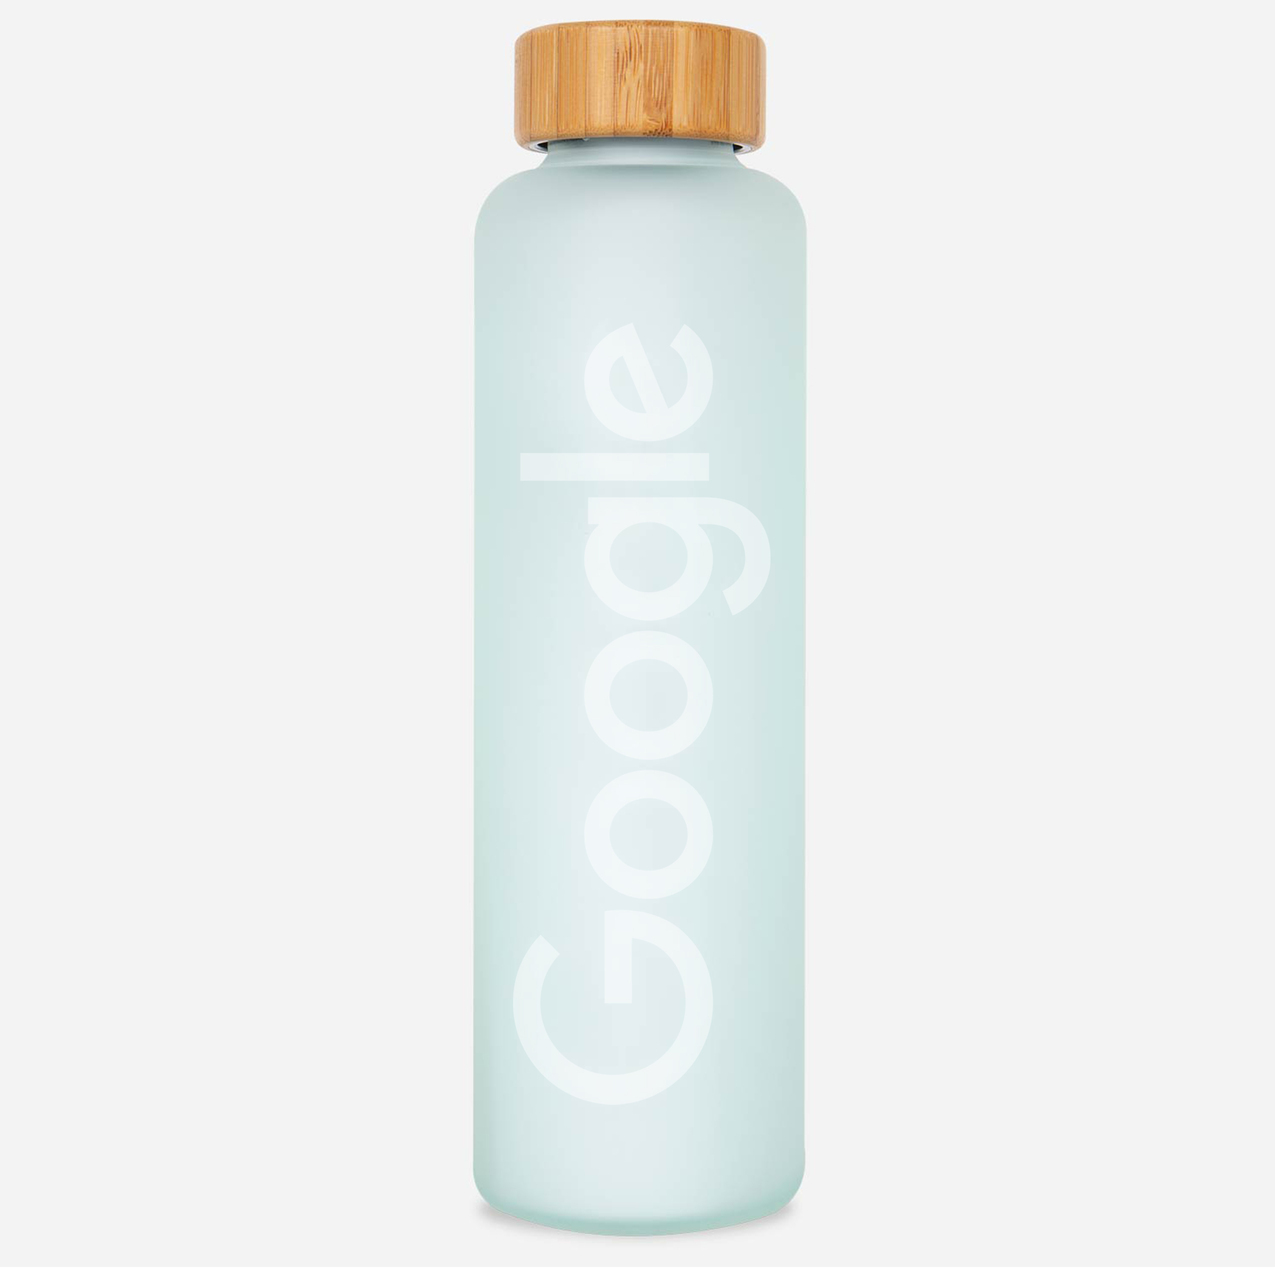 Google RIPL Ocean Blue Bottle